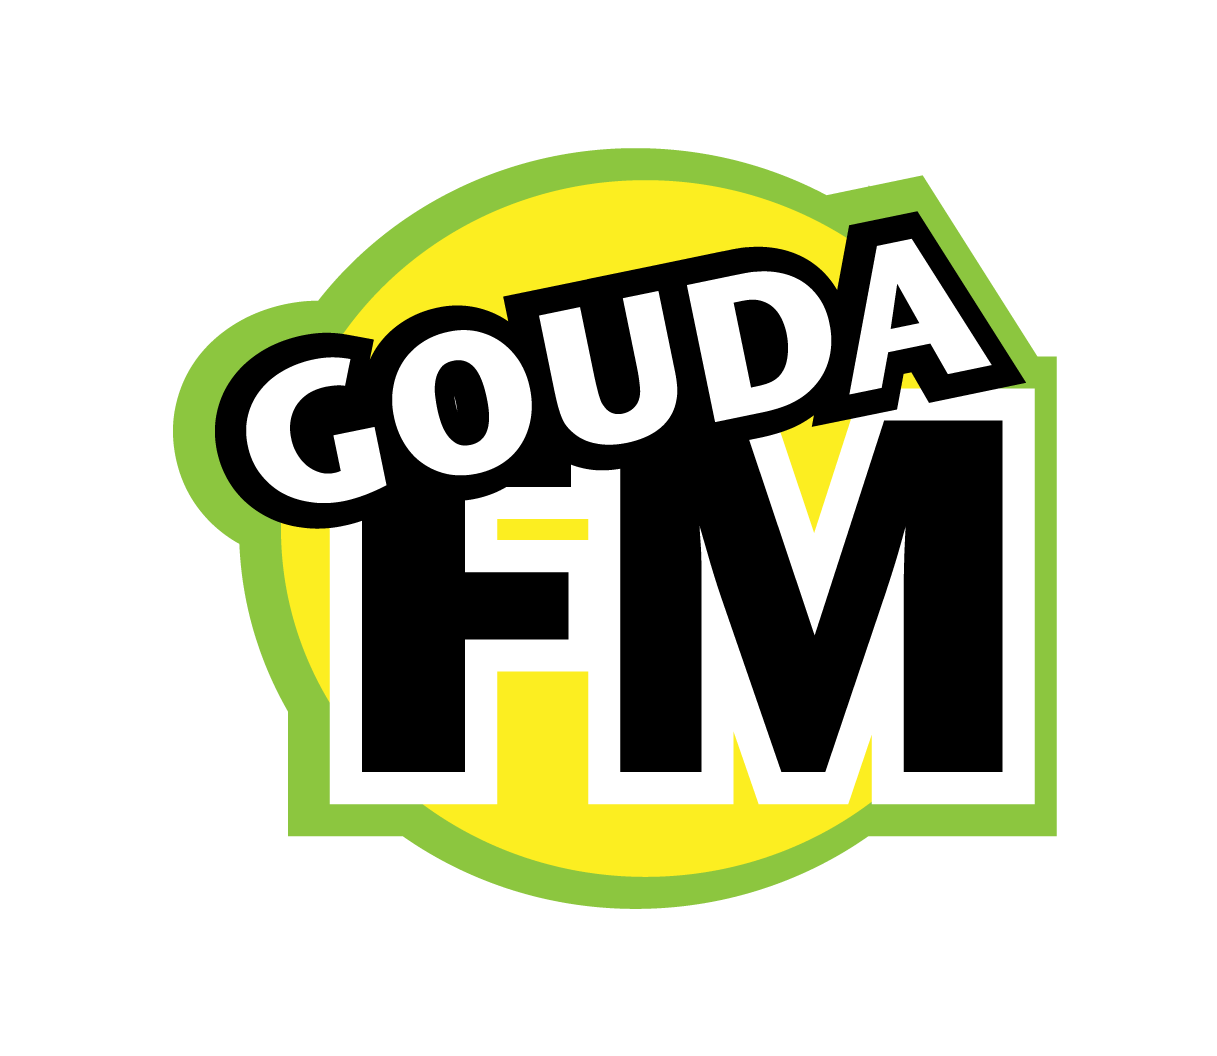 Radio! Boeien!? Leerlingen Vuurvogel maken live radioshow op GoudaFM